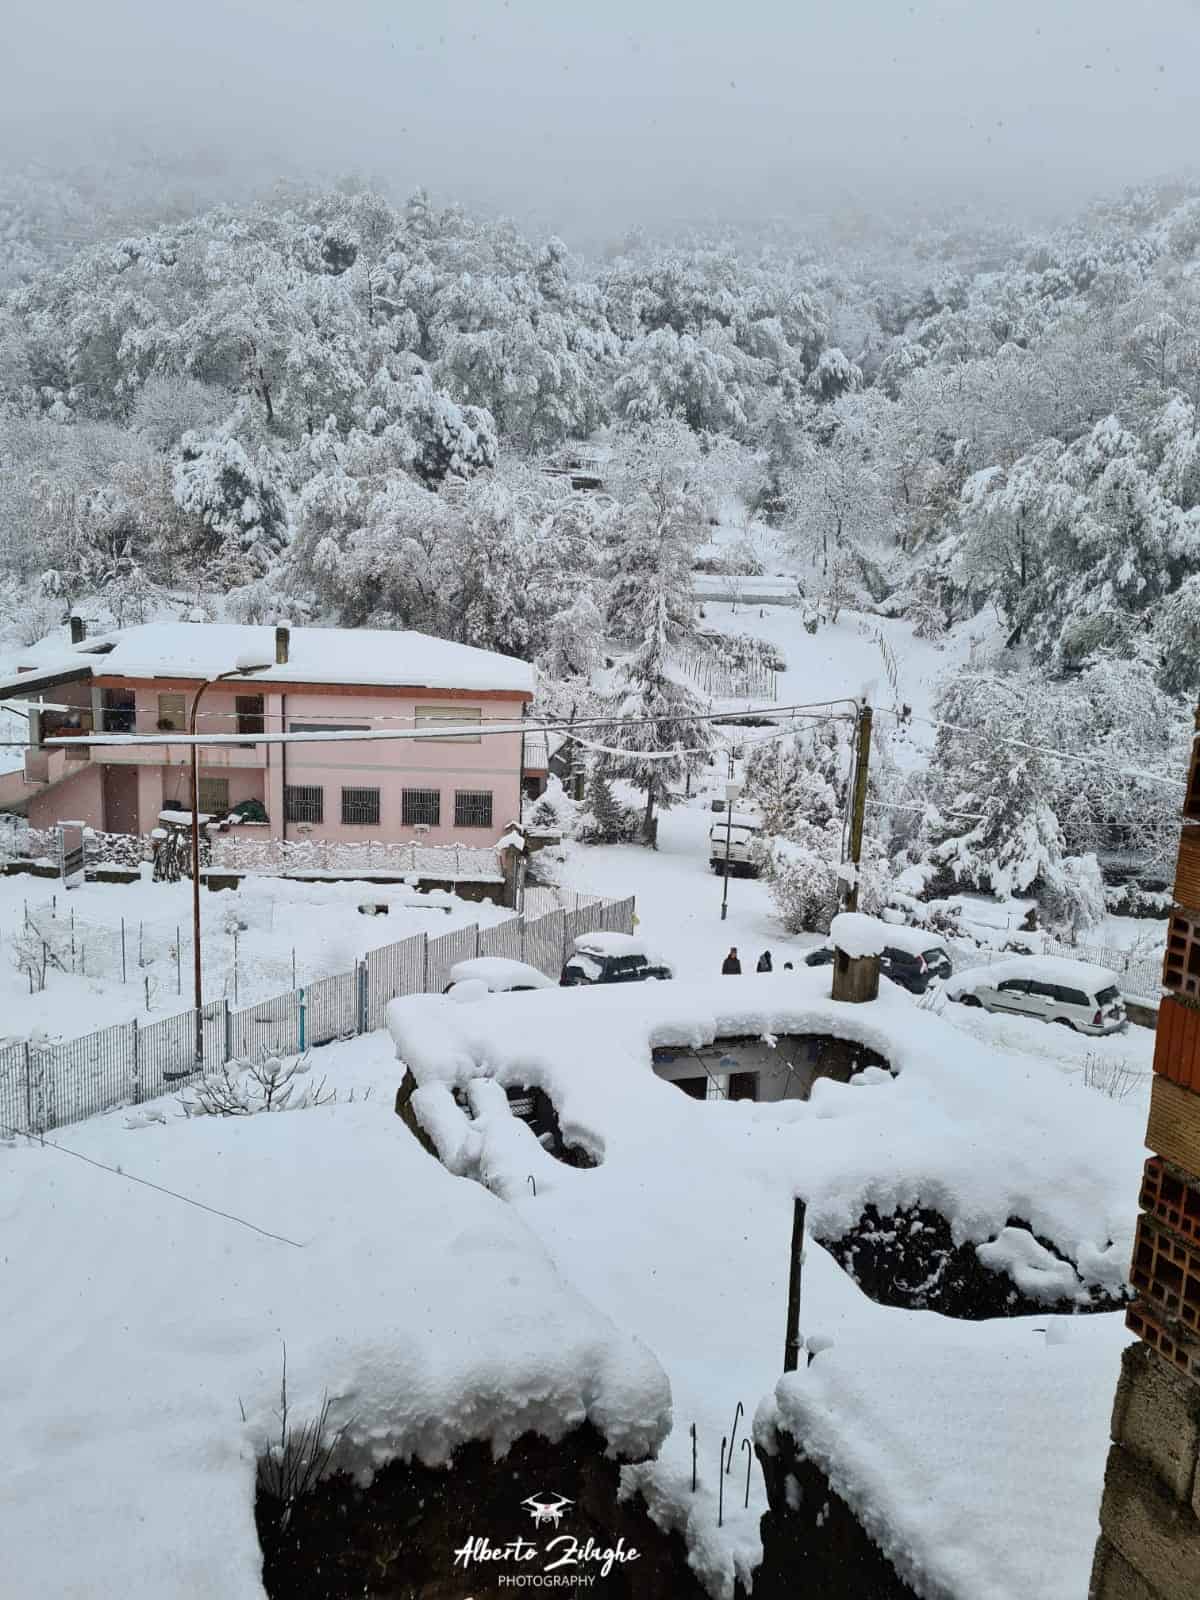 WhatsApp Image 2021 11 29 at 11.35.20 - Sardegna, meteo da Desulo, la grande neve del 29 novembre 2021